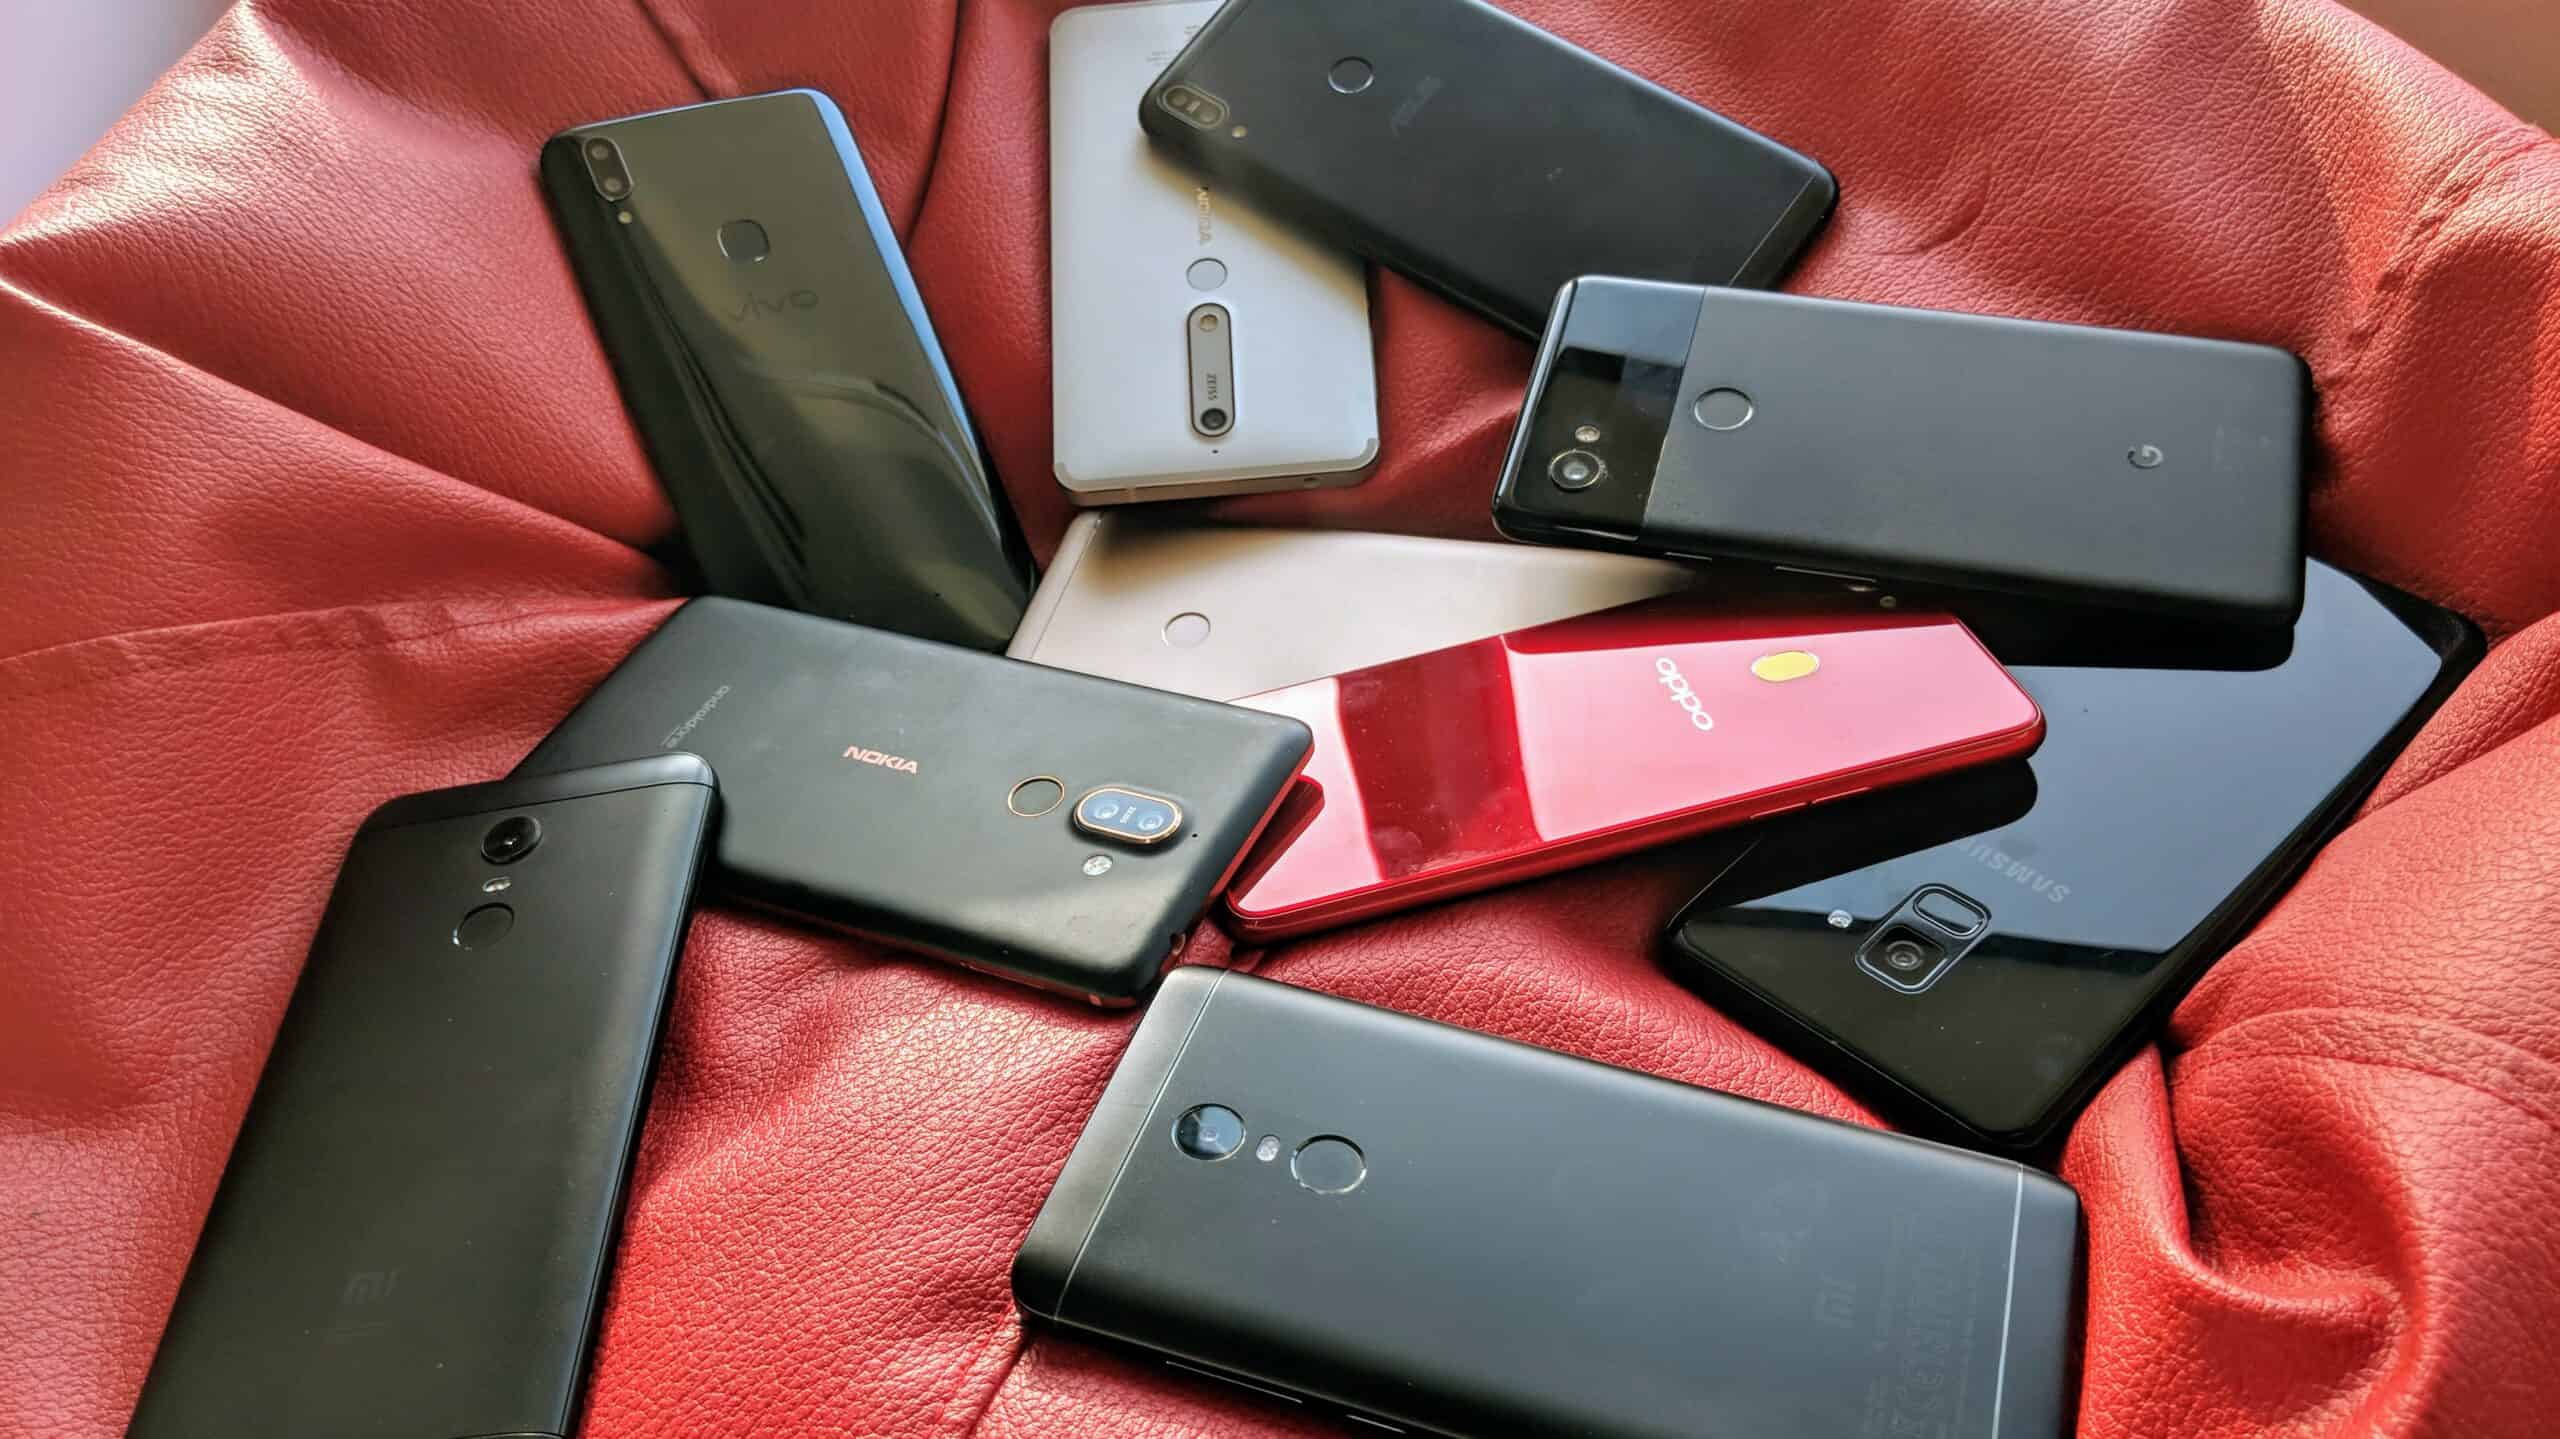 شیائومی در سه ماهه سوم 2020 رکورد فروش 46.6 میلیون تلفن هوشمند را به ثبت رساند